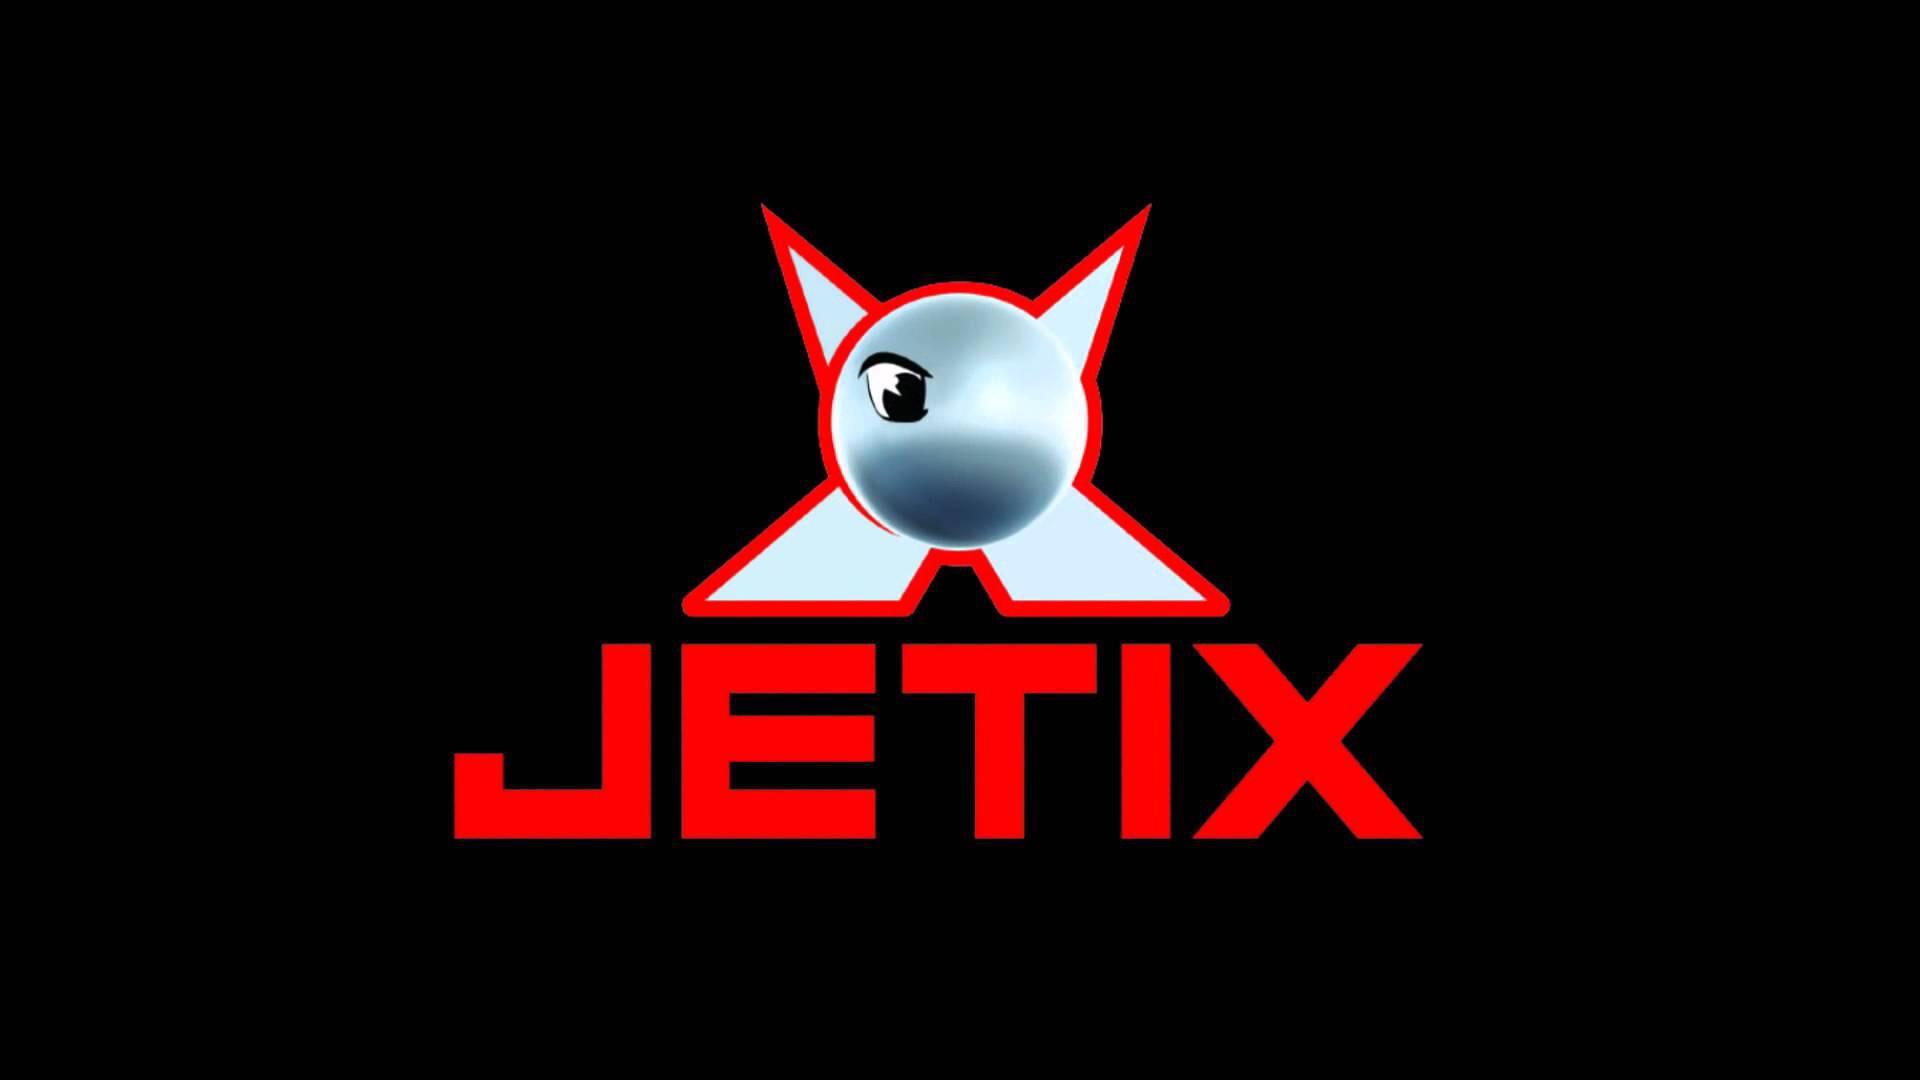 Anyone remembers Watching Jetix?